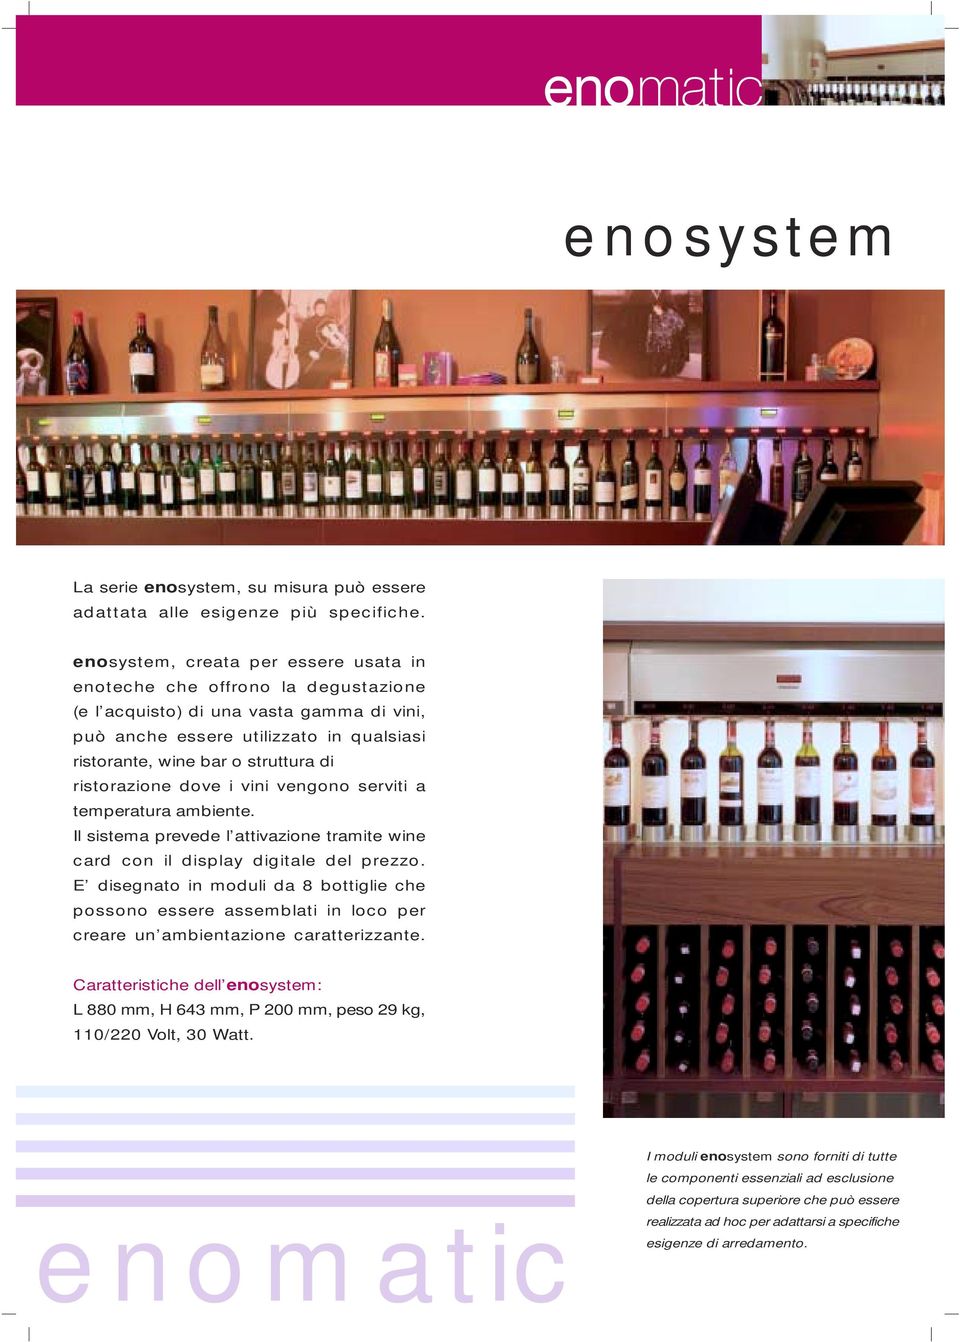 ristorazione dove i vini vengono serviti a temperatura ambiente. Il sistema prevede l attivazione tramite wine card con il display digitale del prezzo.